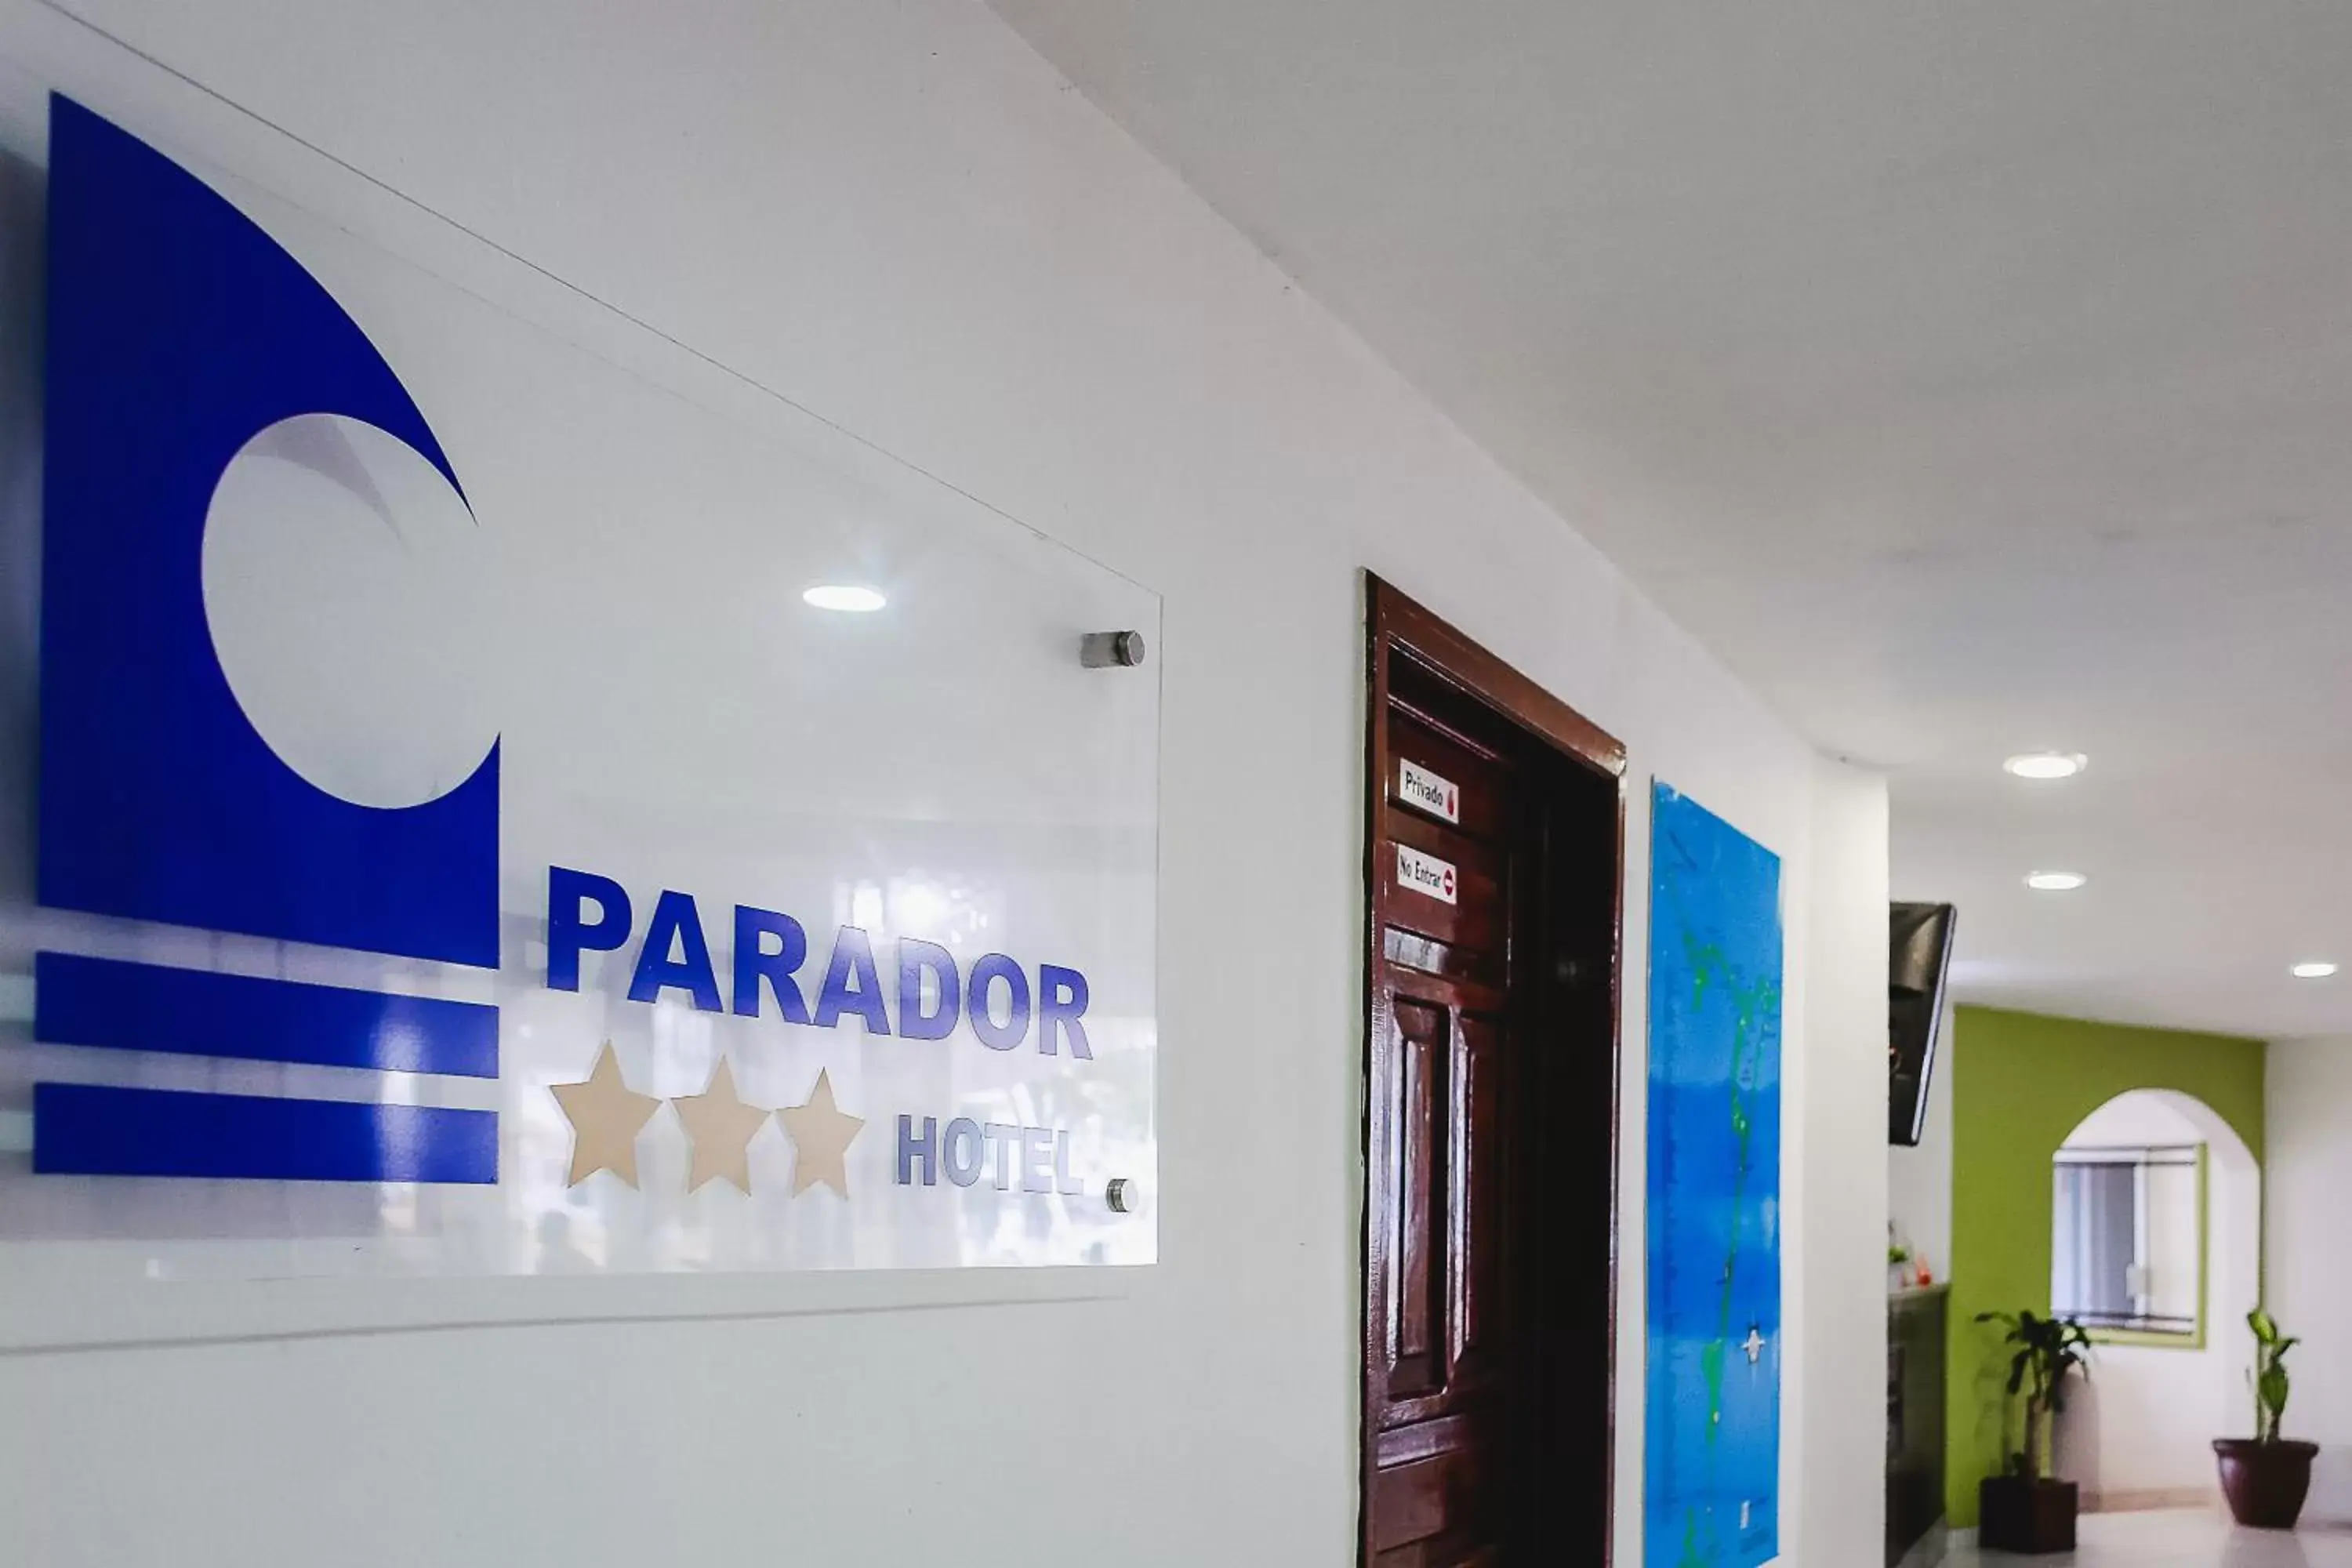 Lobby or reception in Hotel Parador